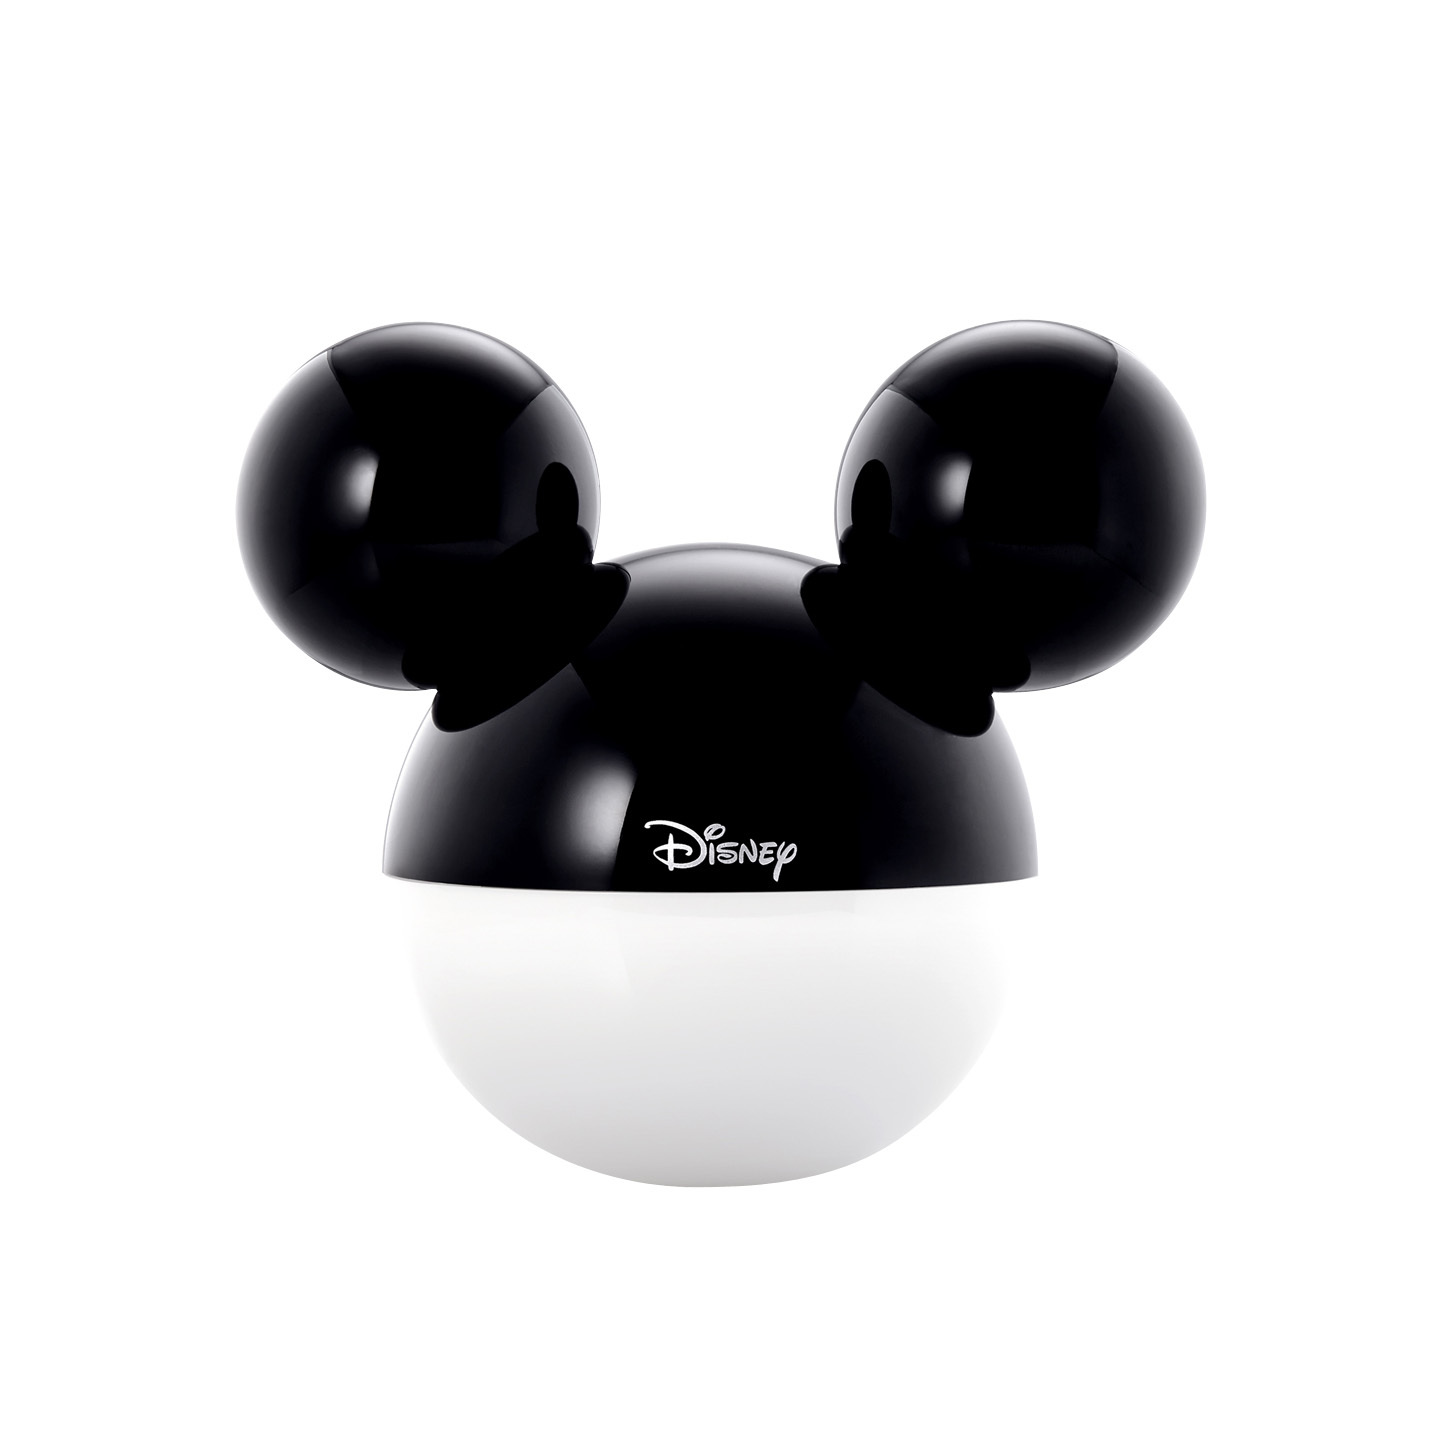 Infothink ルームライト Room Light Ledルームライト ディズニー Disney ミッキーマウス Mickey Mouse Bluetooth アプリで色調整 Bl600 E Qualia イークオリア